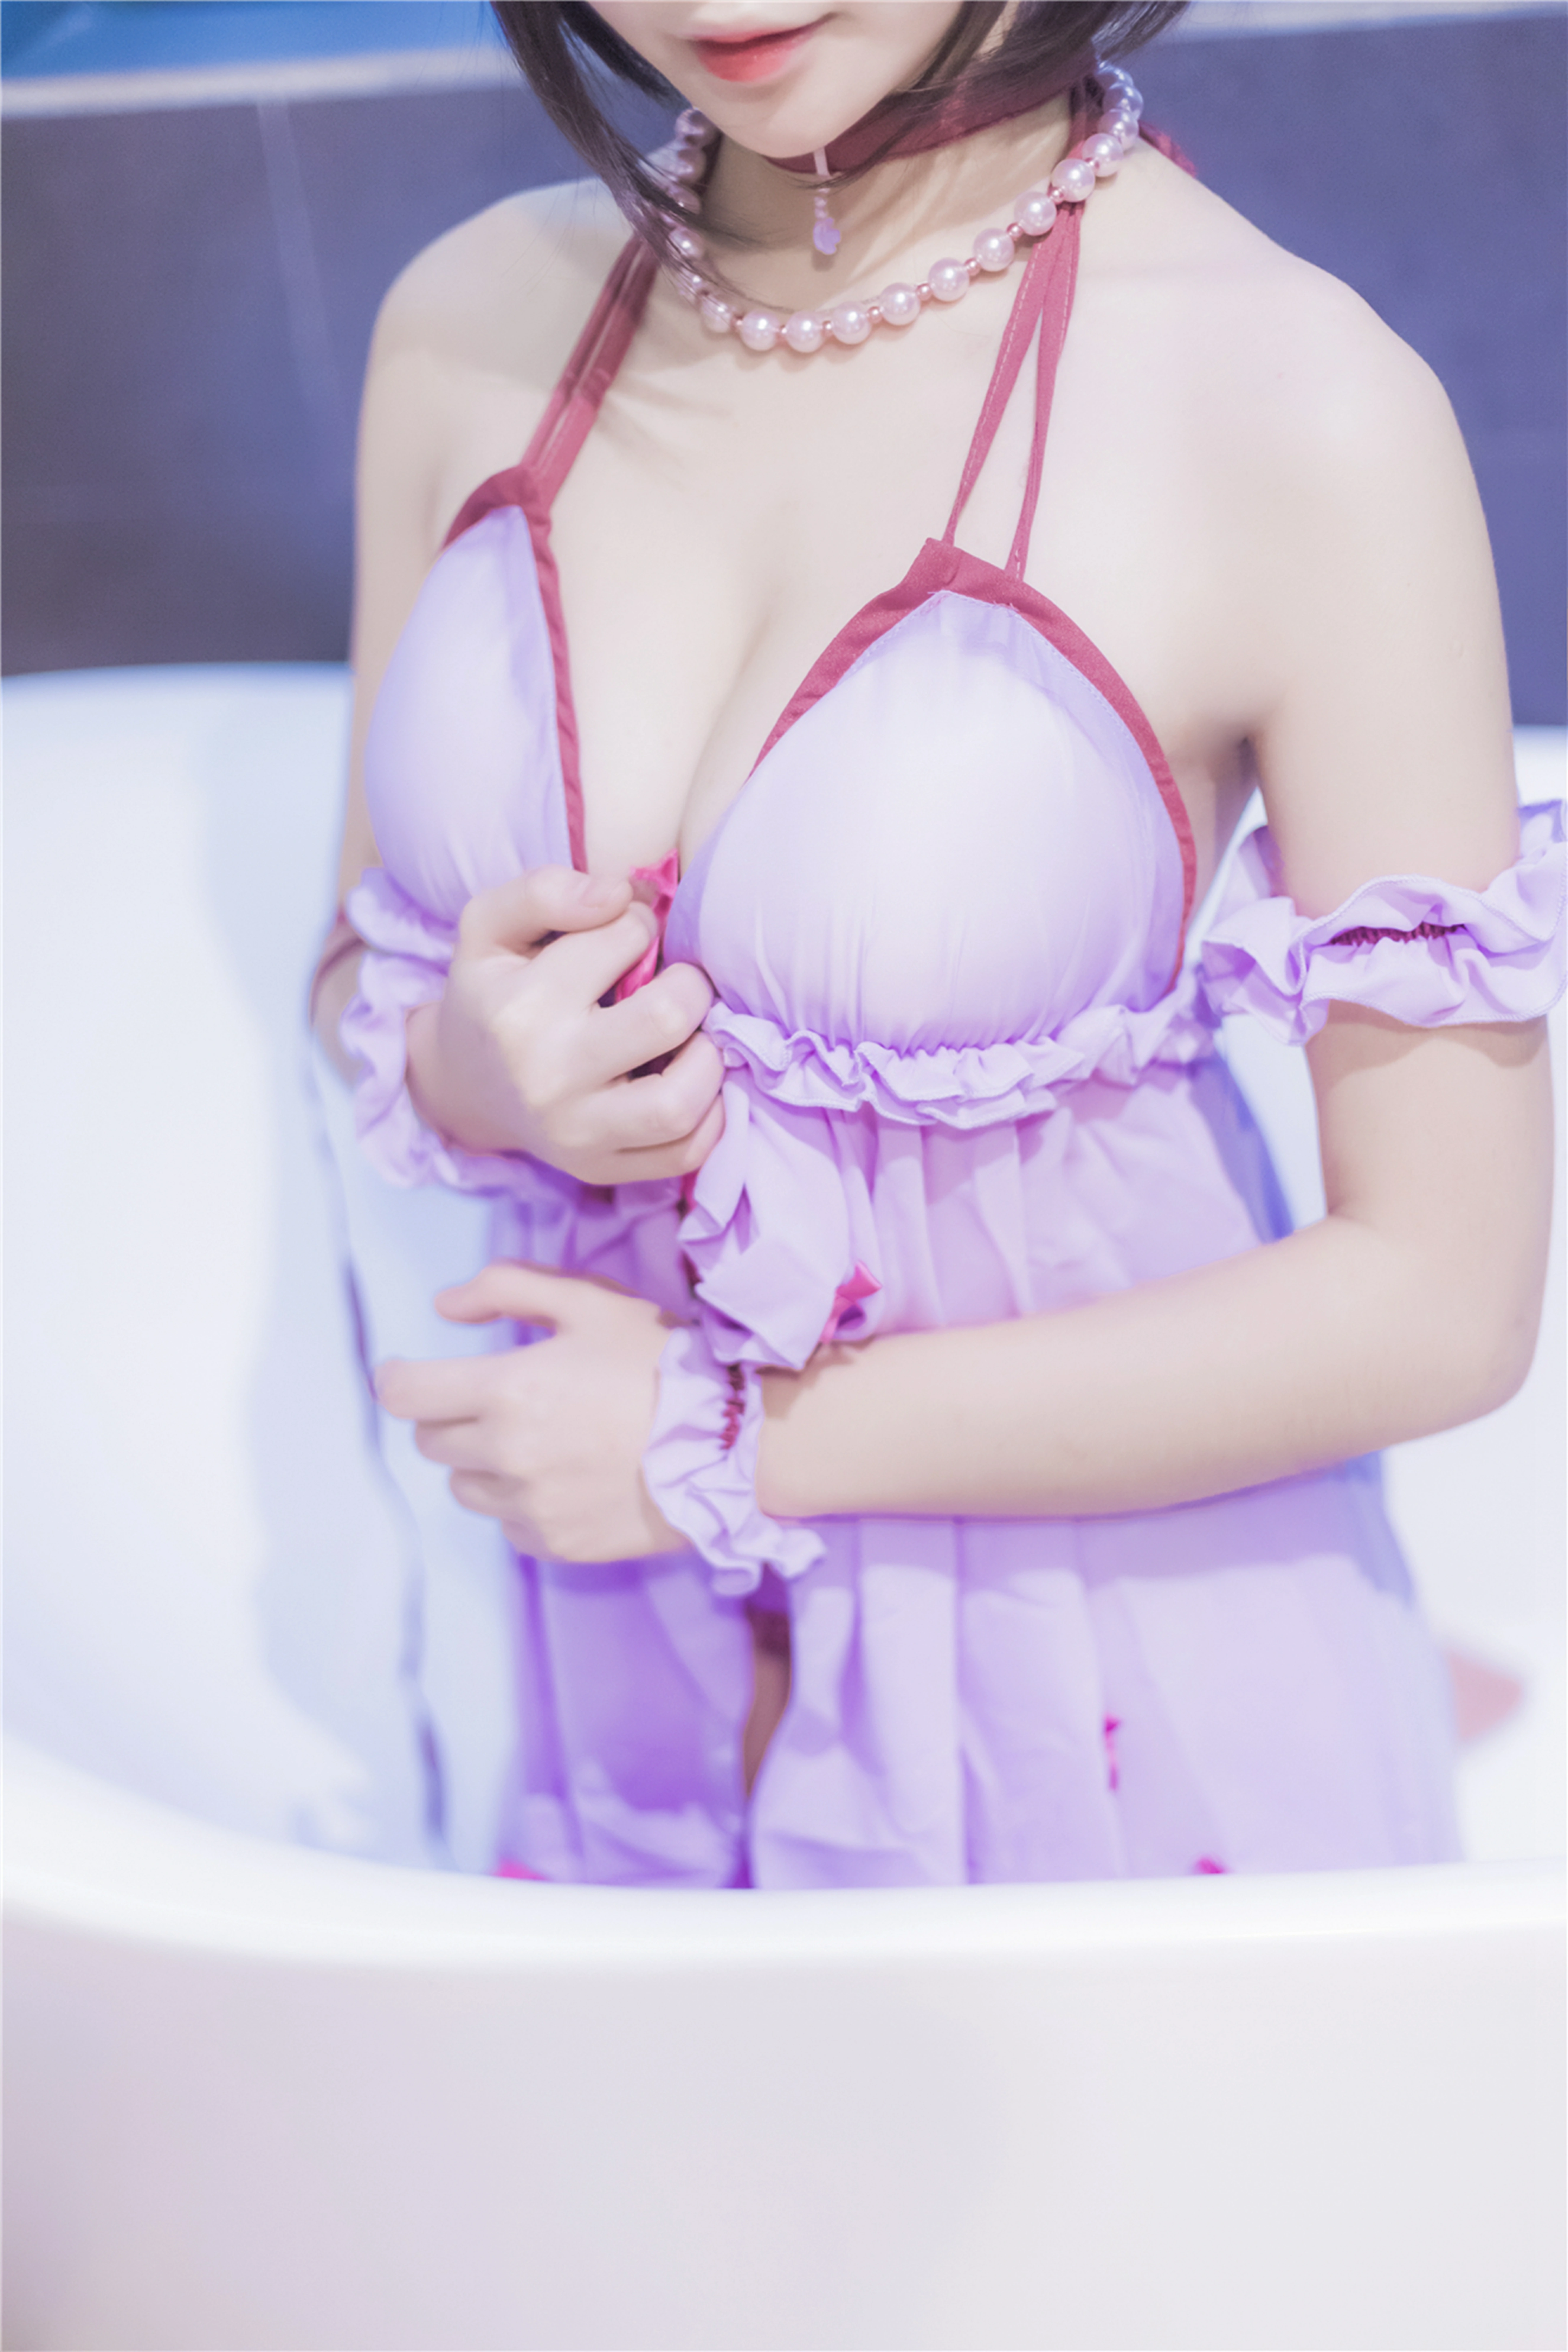 [风之领域]NO.201 清纯丰满小萝莉 紫色情趣制服连衣裙性感私房写真集,